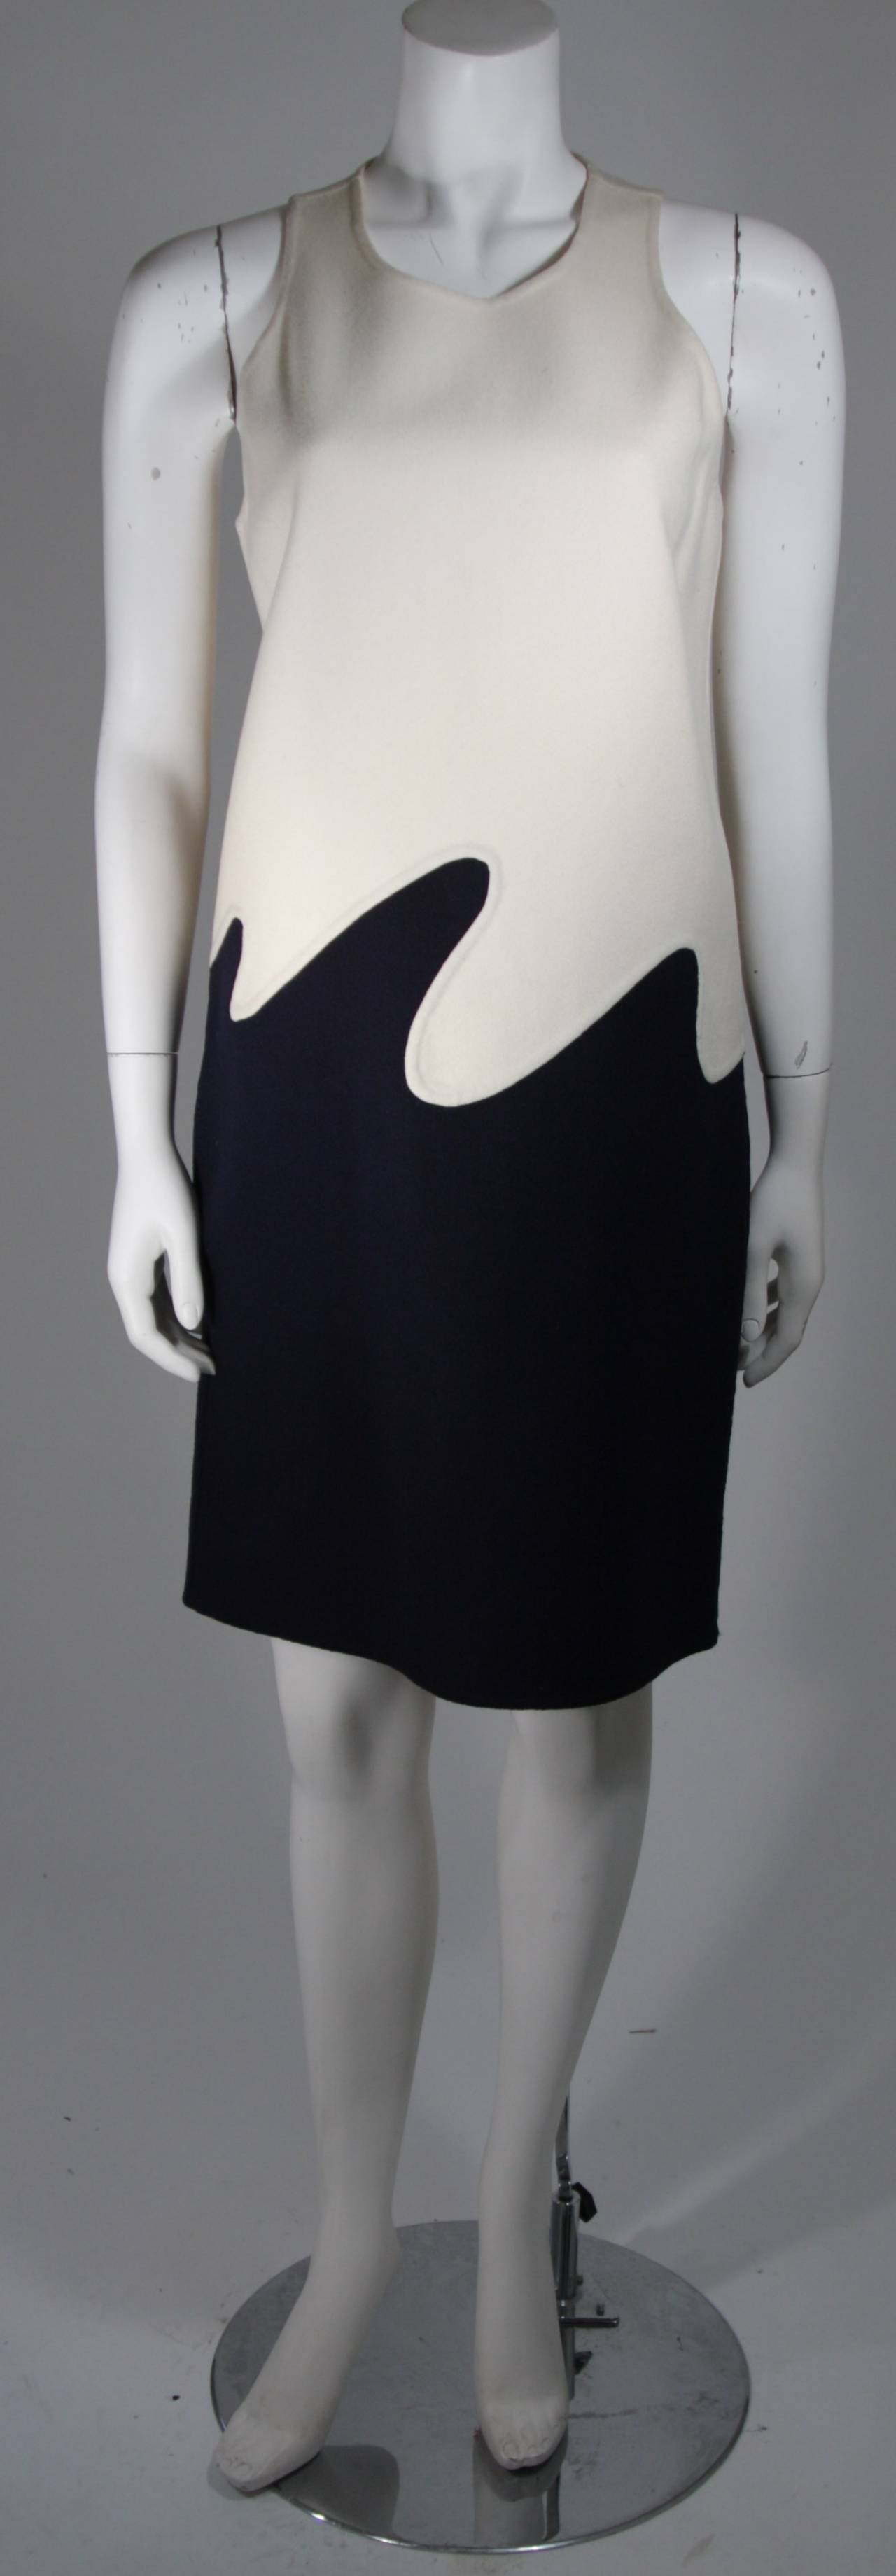 Dieses Kleid aus den 1960er Jahren besteht aus mittelschwerer gefilzter Wolle in den Farben Creme und Marine. Das wunderbare Design im Shift-Stil wird durch die wellenförmige Nahtführung ergänzt, die die kontrastierenden Farbtöne zusammenführt und